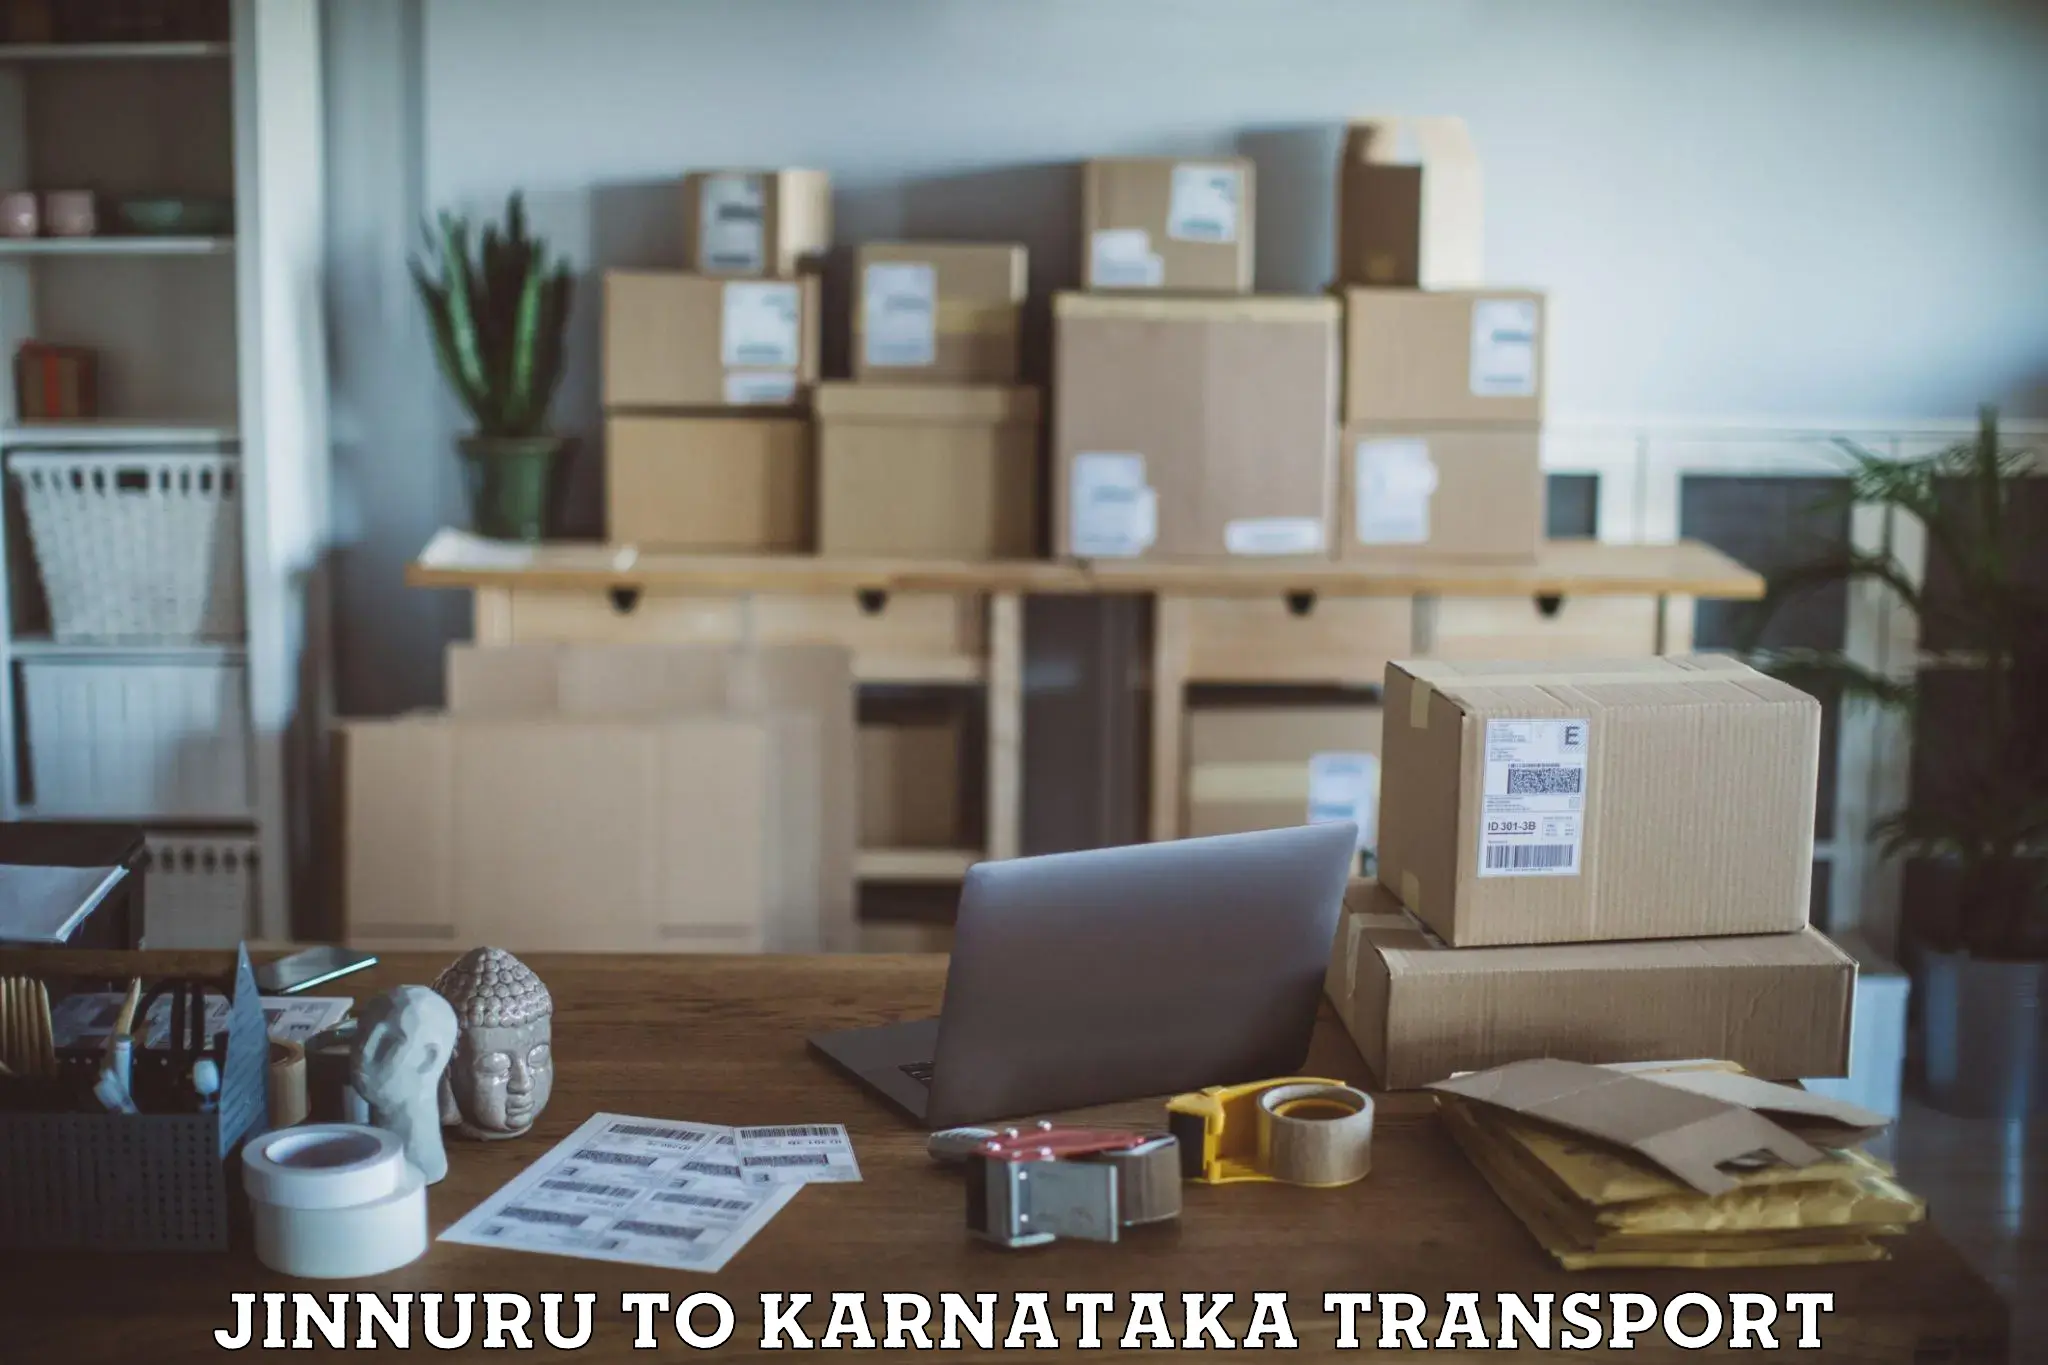 Land transport services in Jinnuru to Karnataka